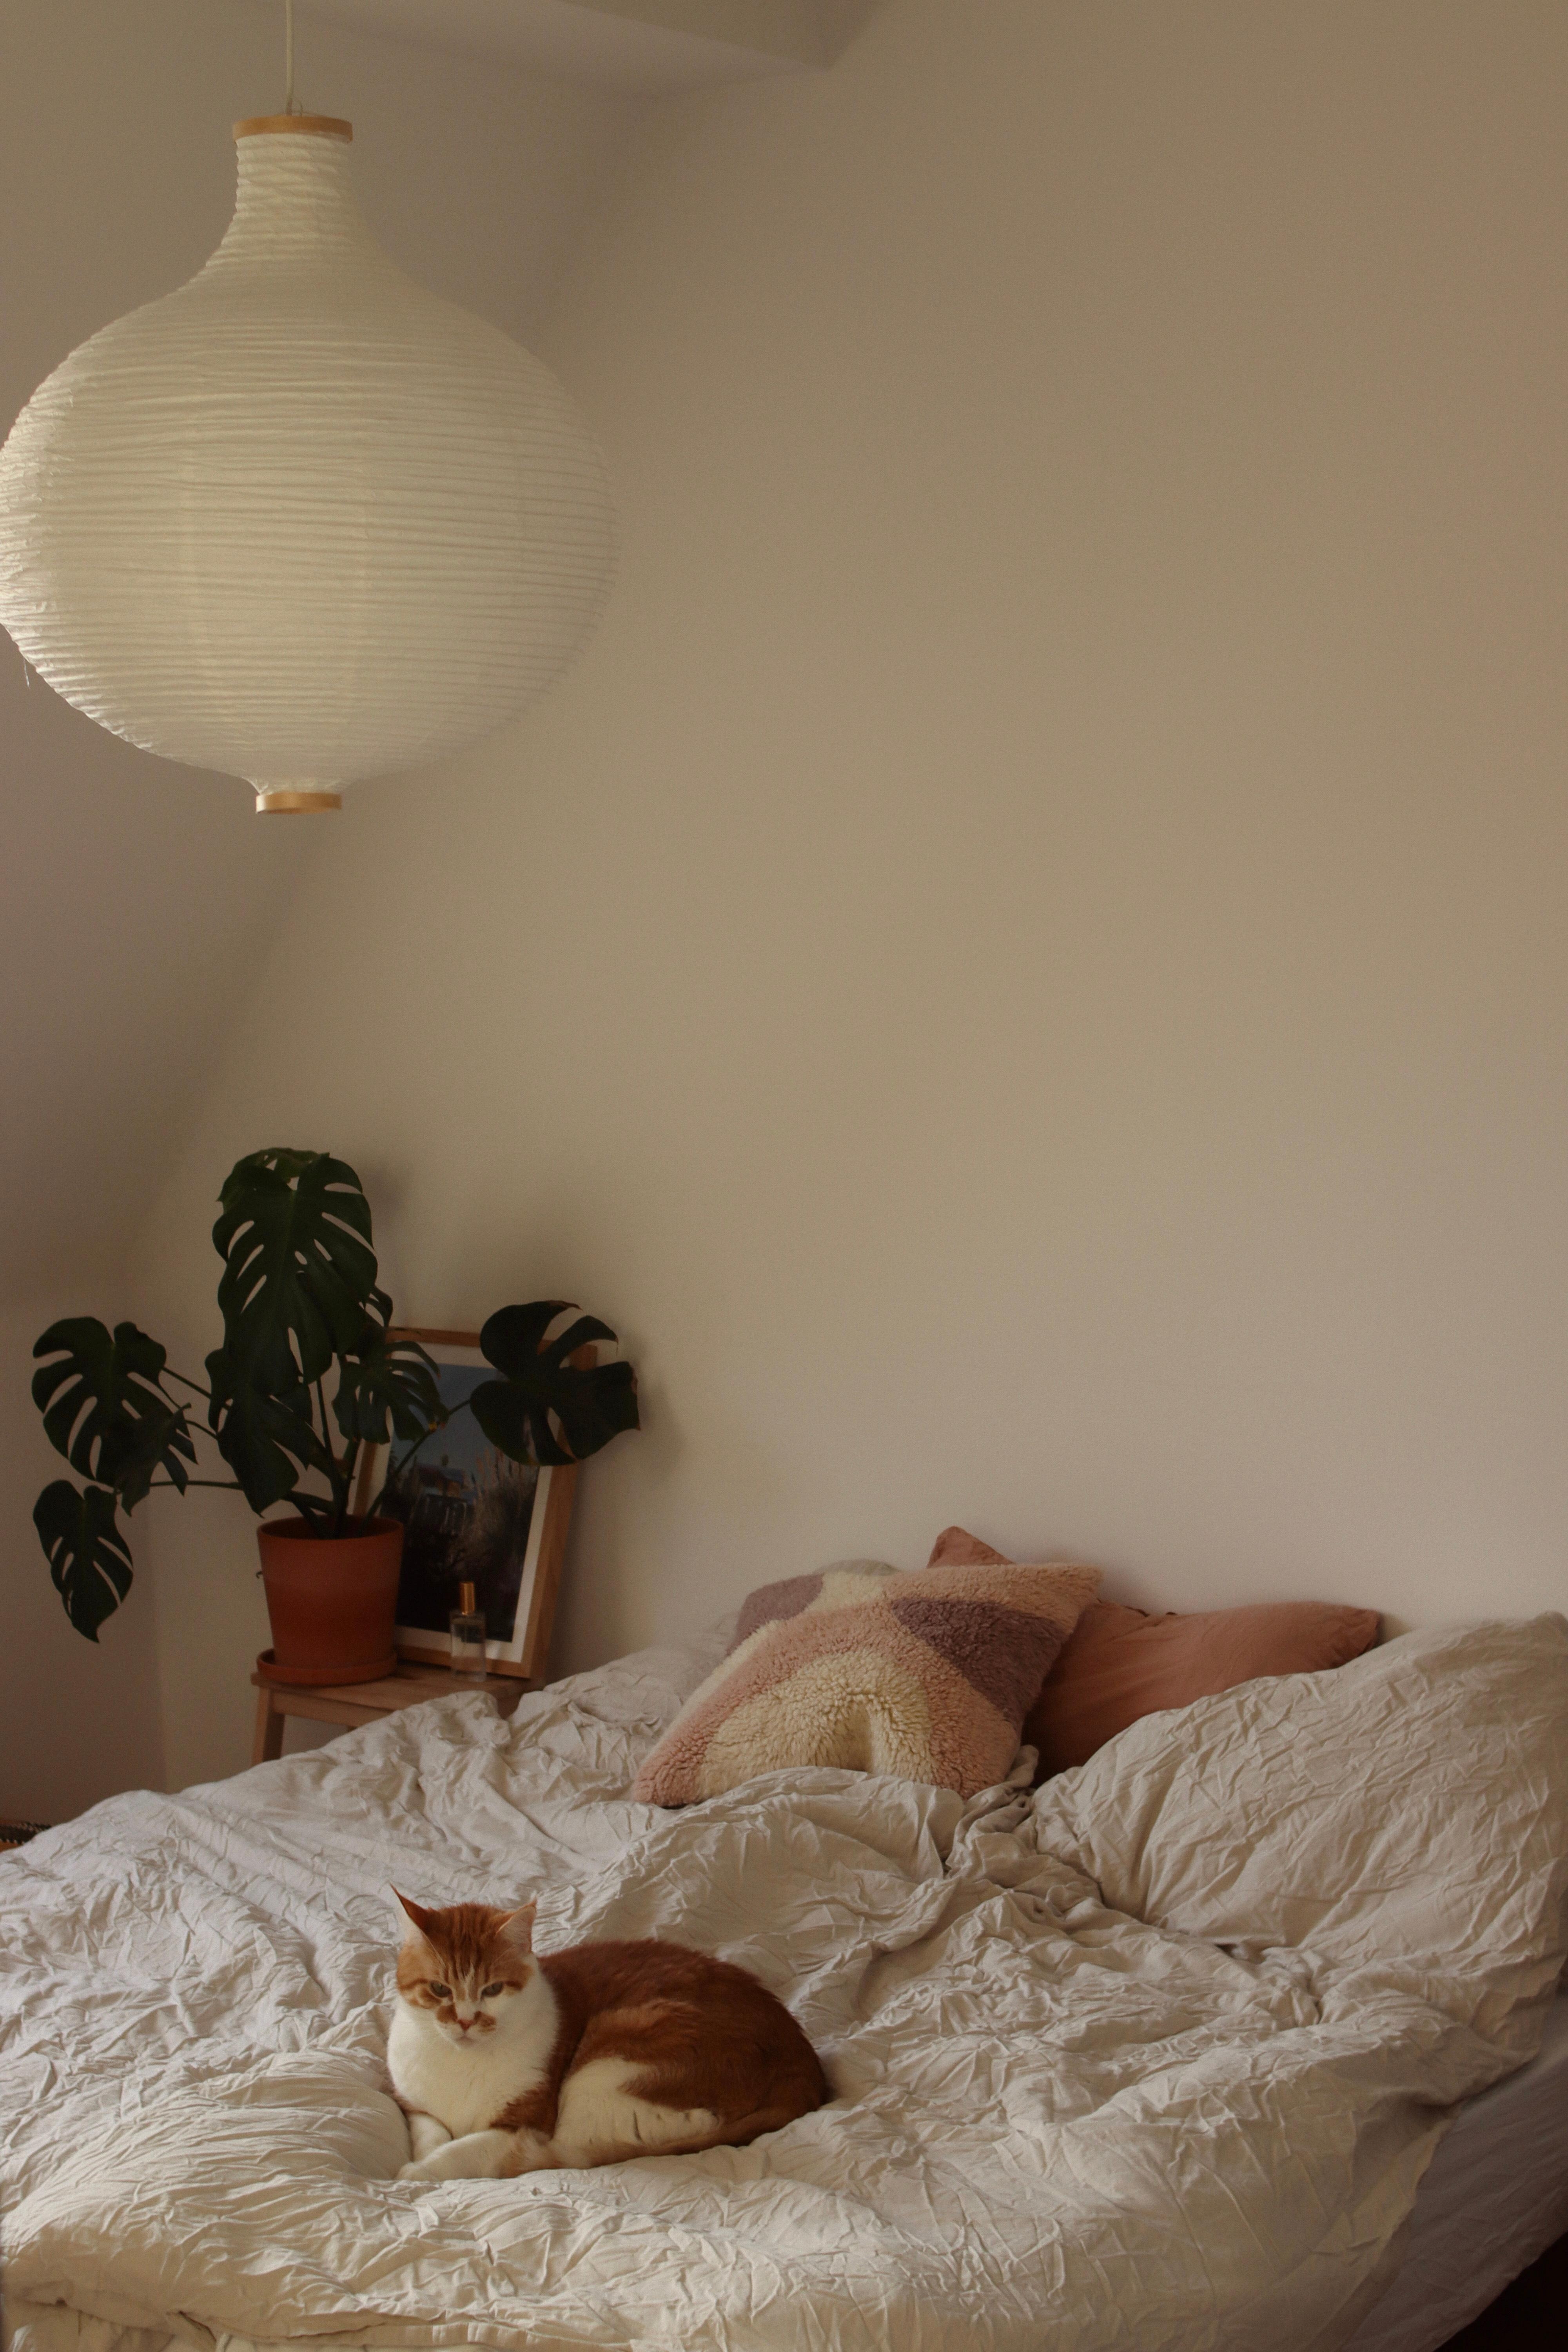 Kuscheltier 🤎
#schlafzimmer#cozy#bett